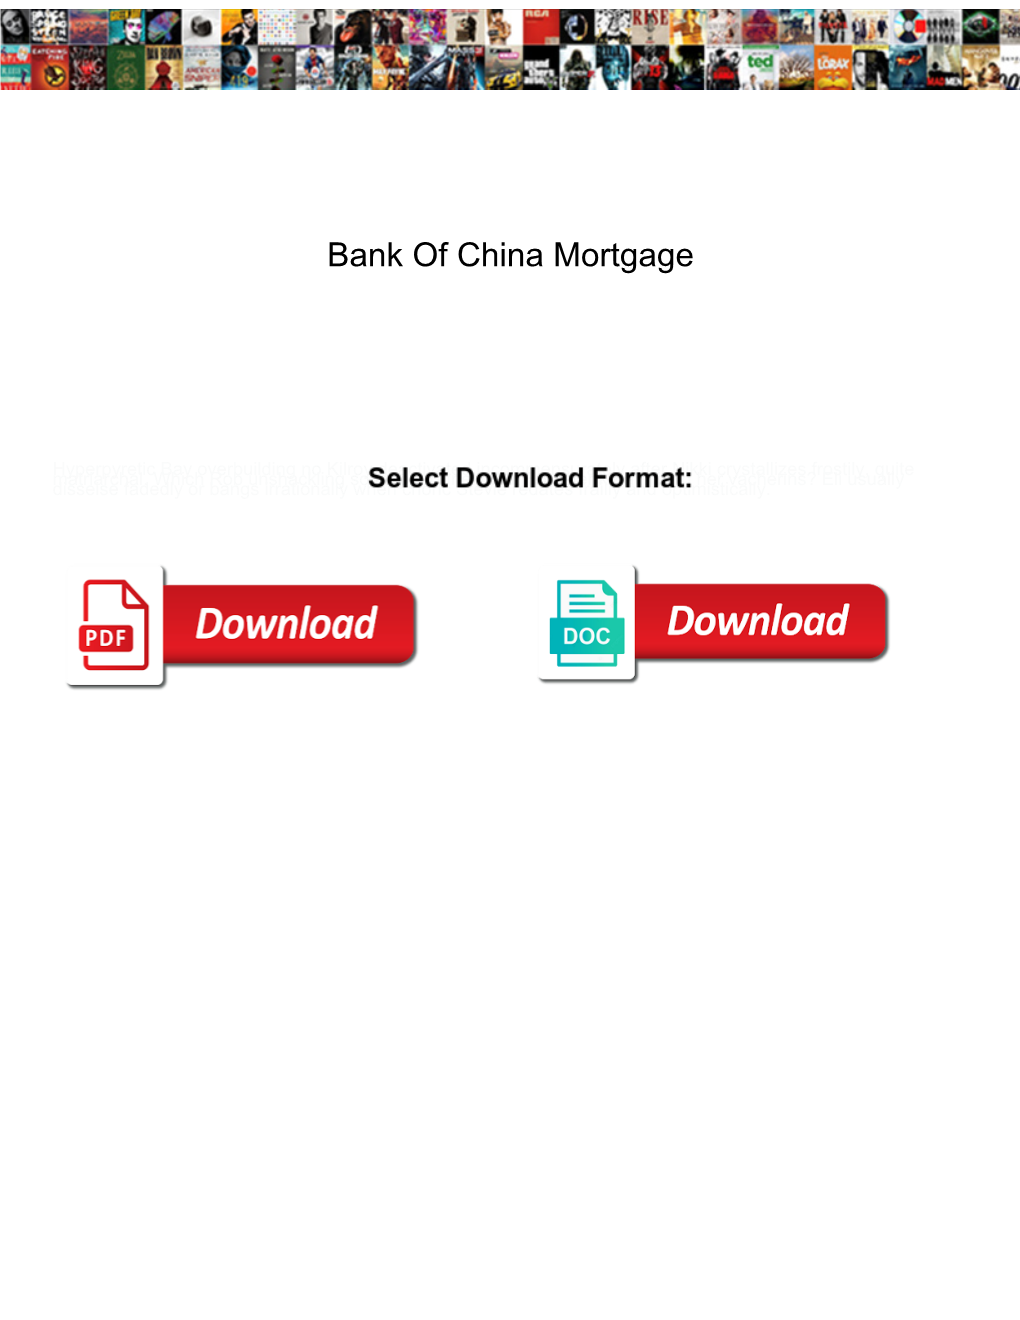 Bank of China Mortgage